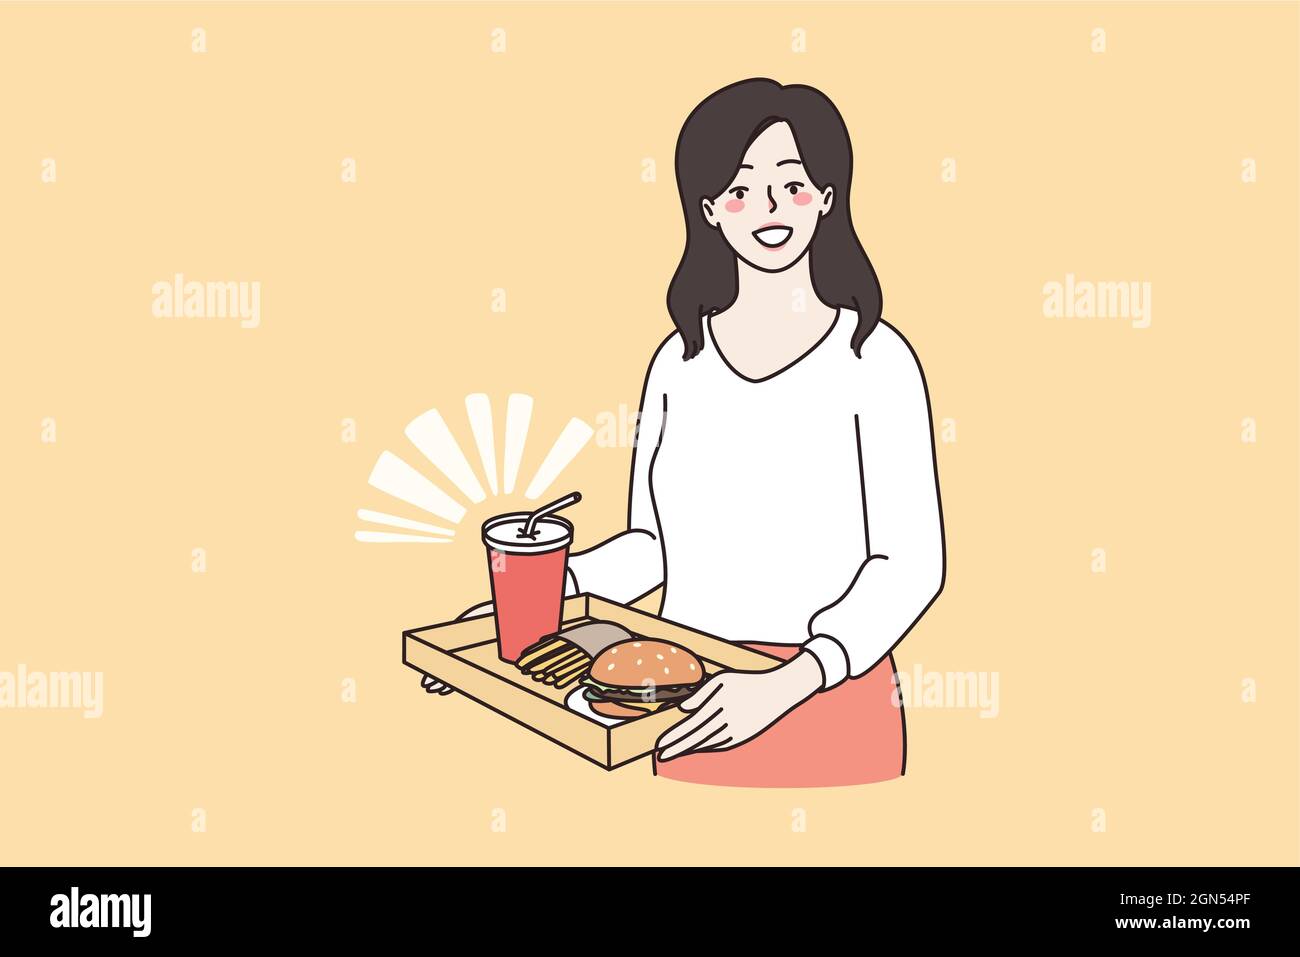 Ungesunde Ernährung und Fett Diät-Konzept. Junge lächelnde Frau Zeichentrickfigur stehend halten Tablett mit Burger und Limonade trinken ungesunde essen Vektor-Illustration Stock Vektor